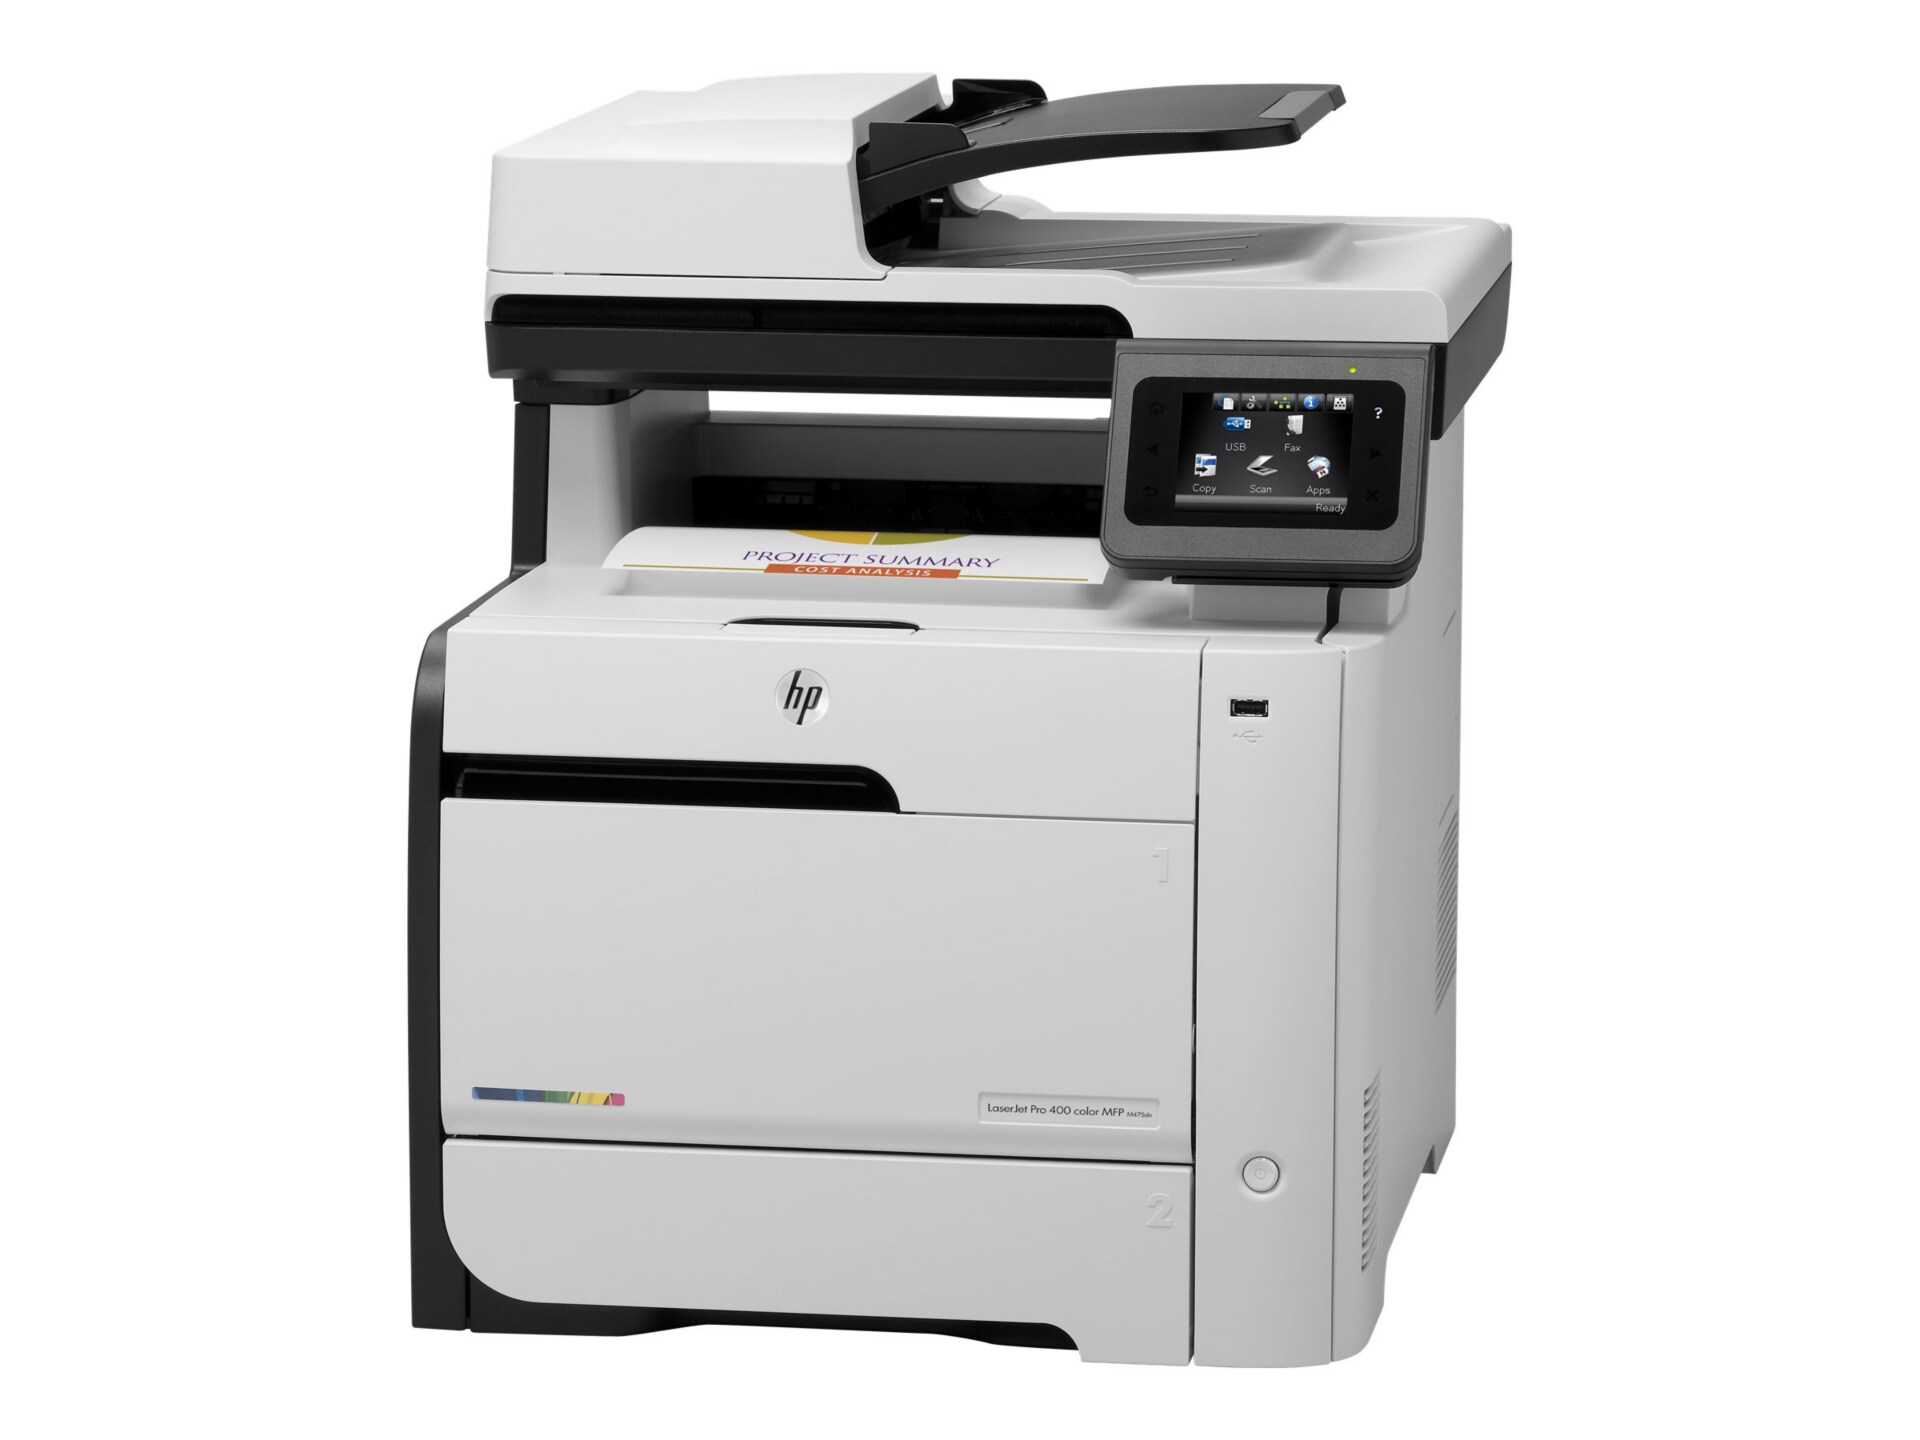 HP LaserJet Pro 400 color M475dn